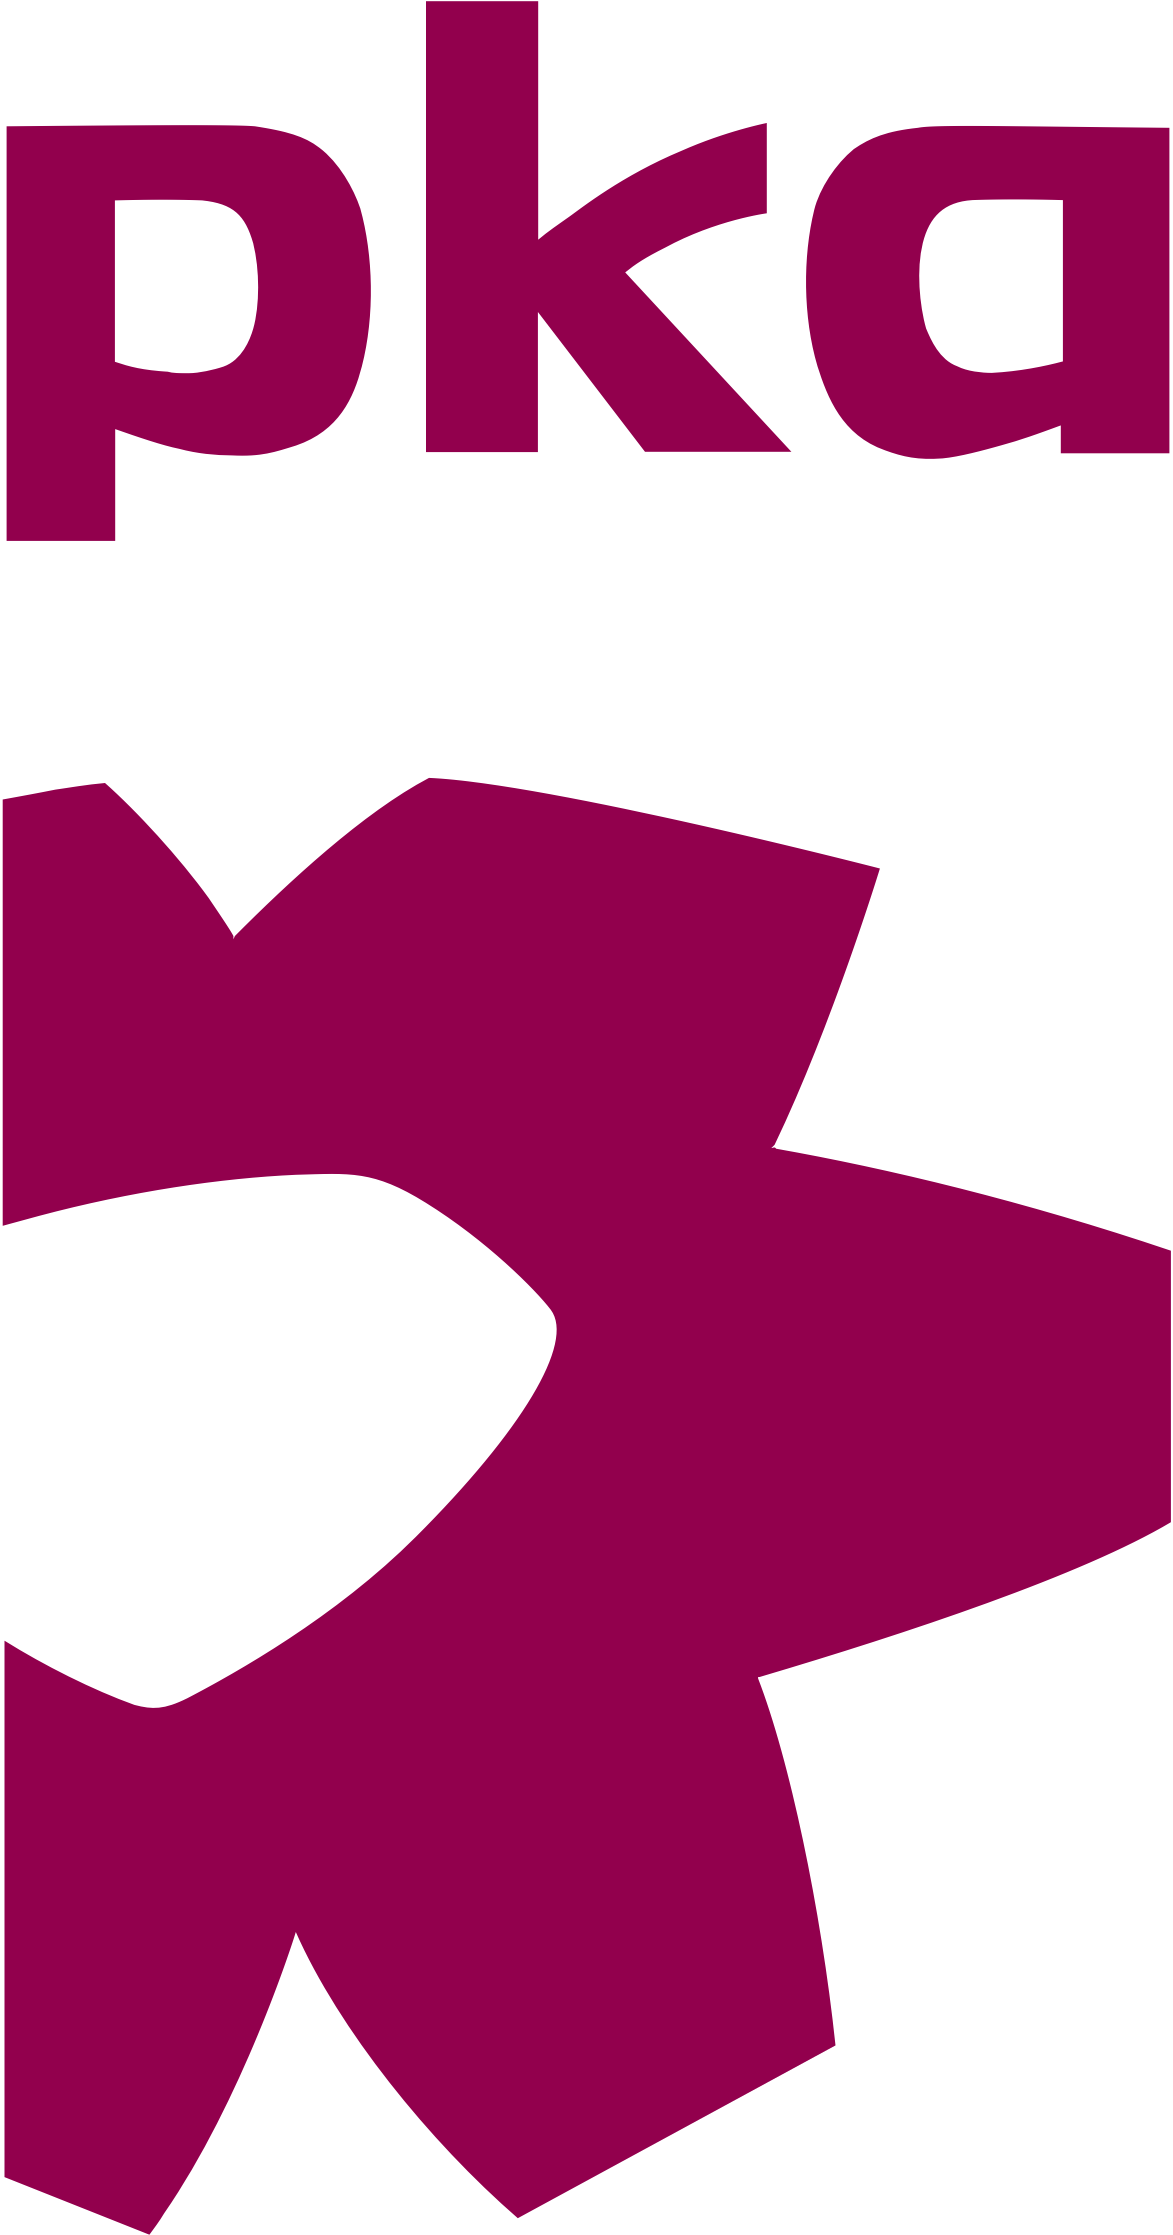 PKA logo